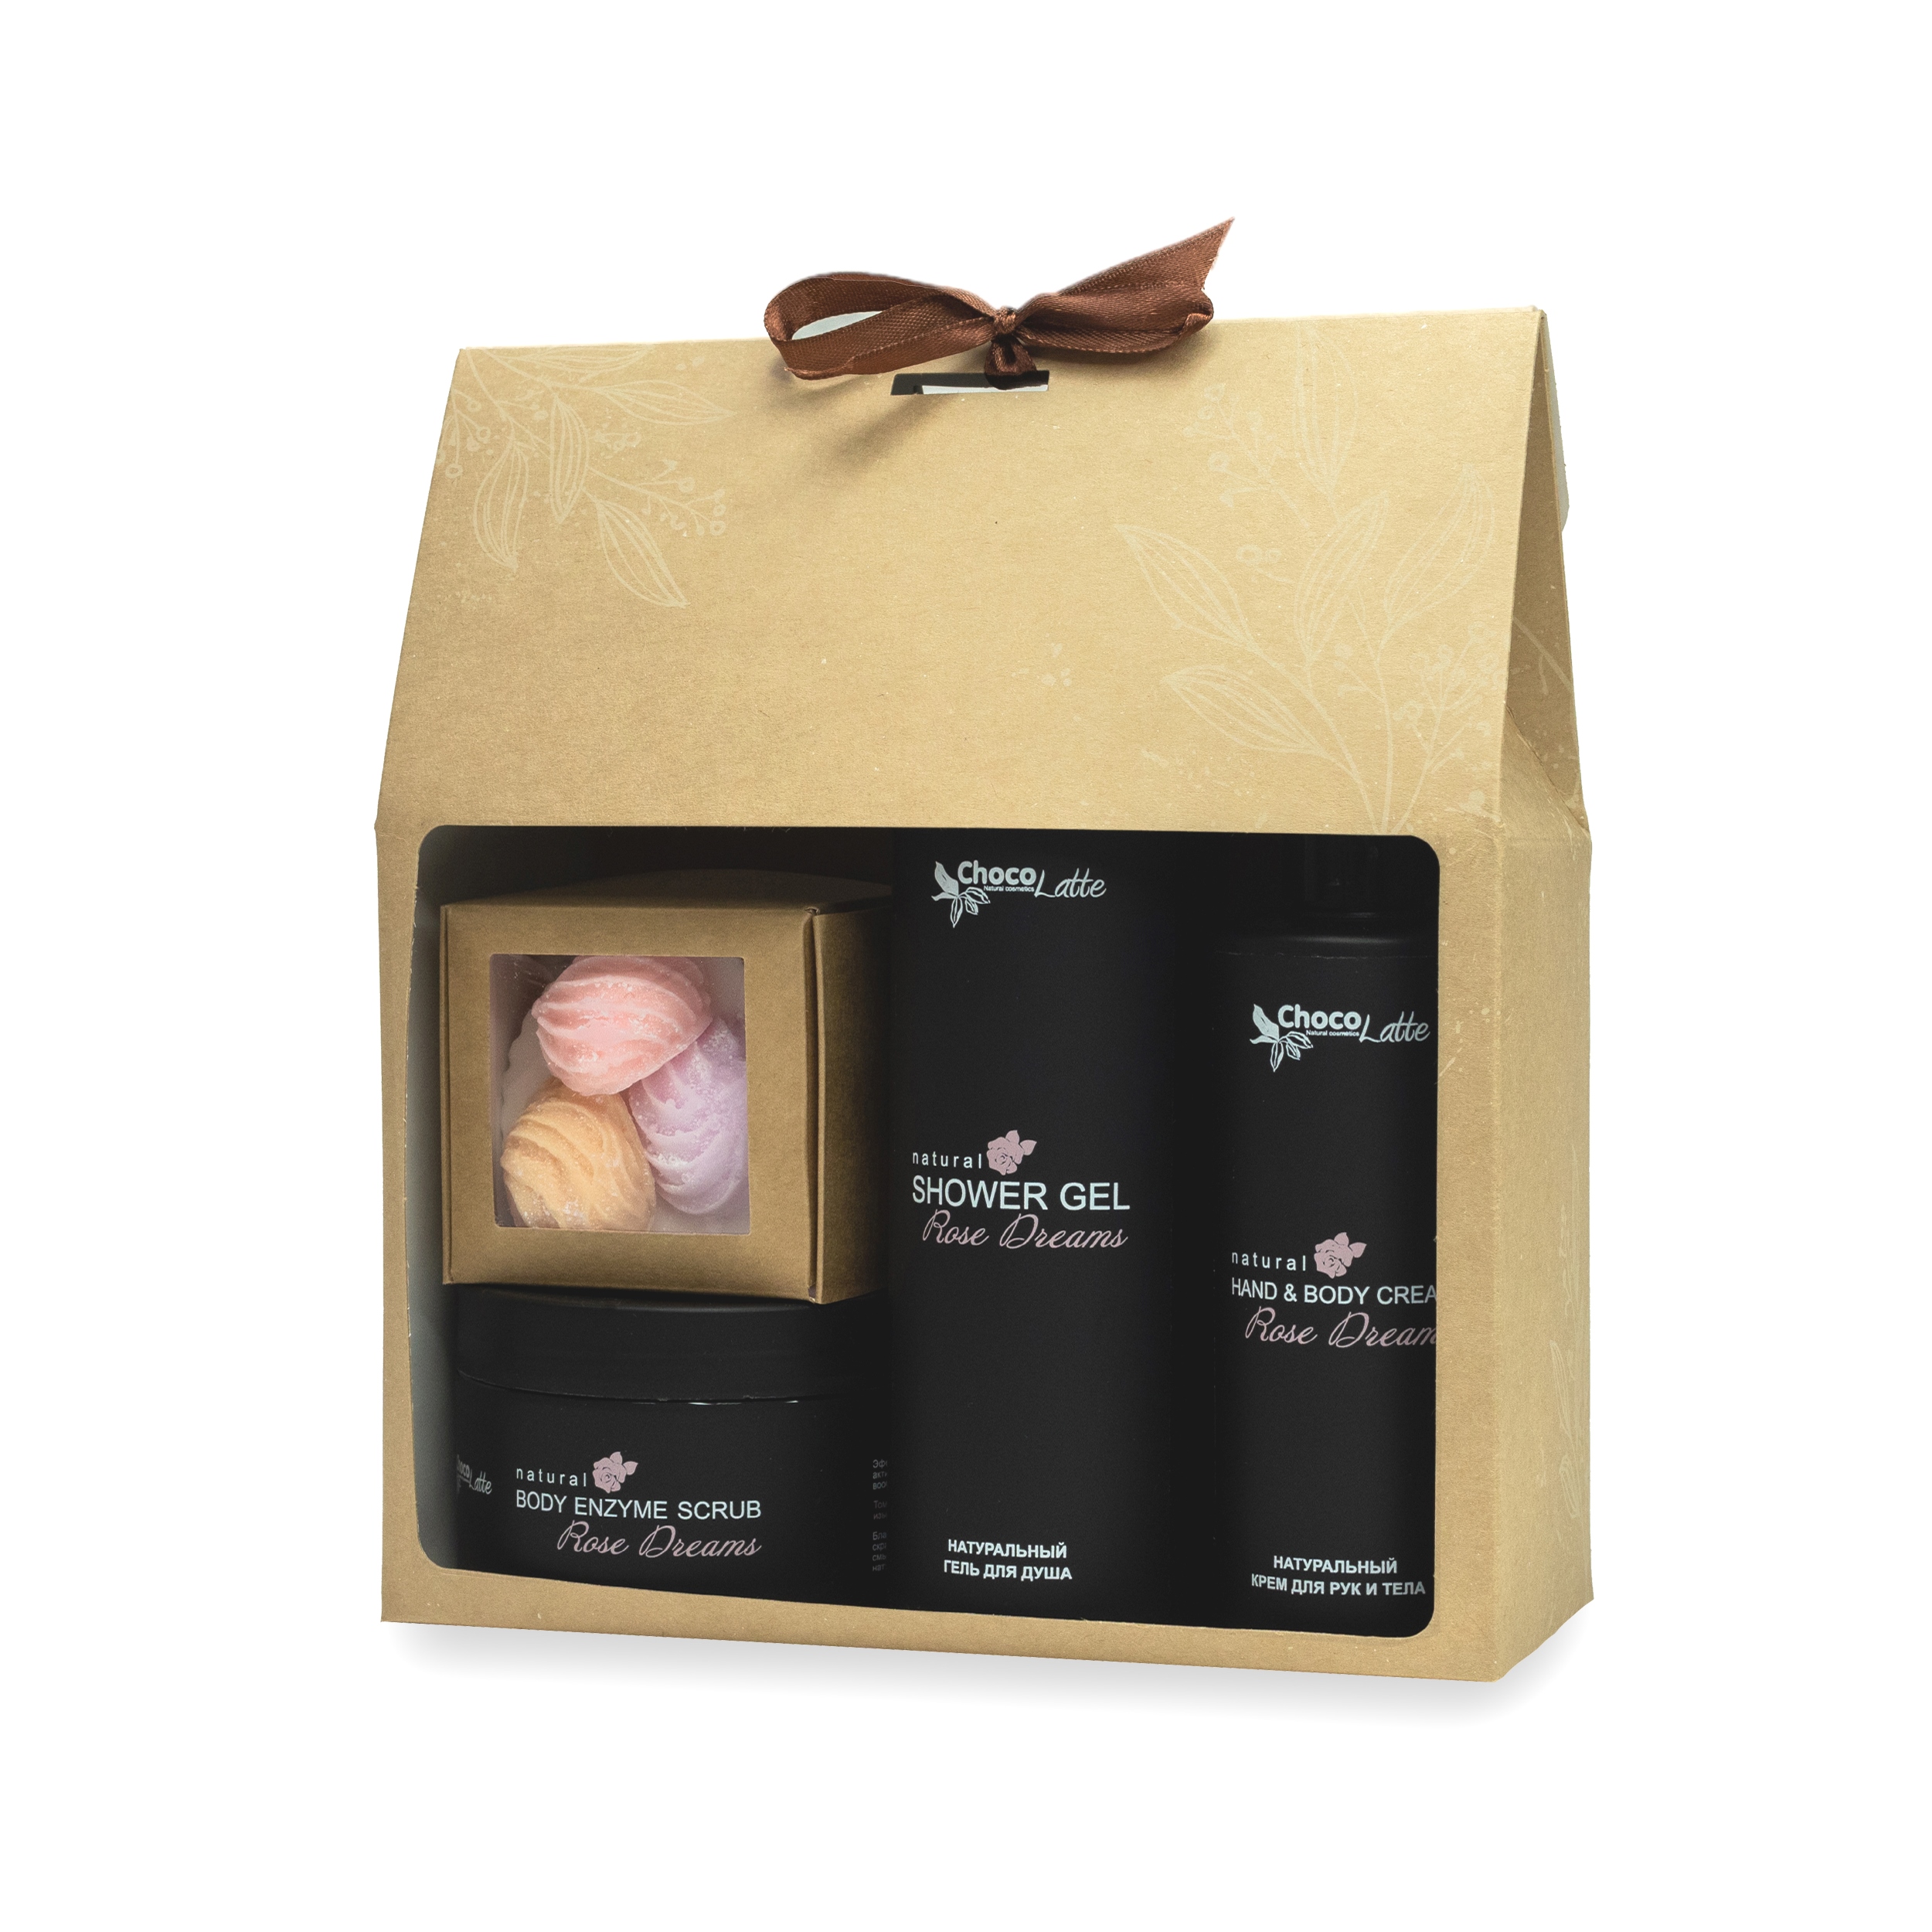 Подарочный набор №4 ChocoLatte ROSE DREAMS для тела индекс натуральности набор уходовой косметики для тела скраб и крем баттер манго